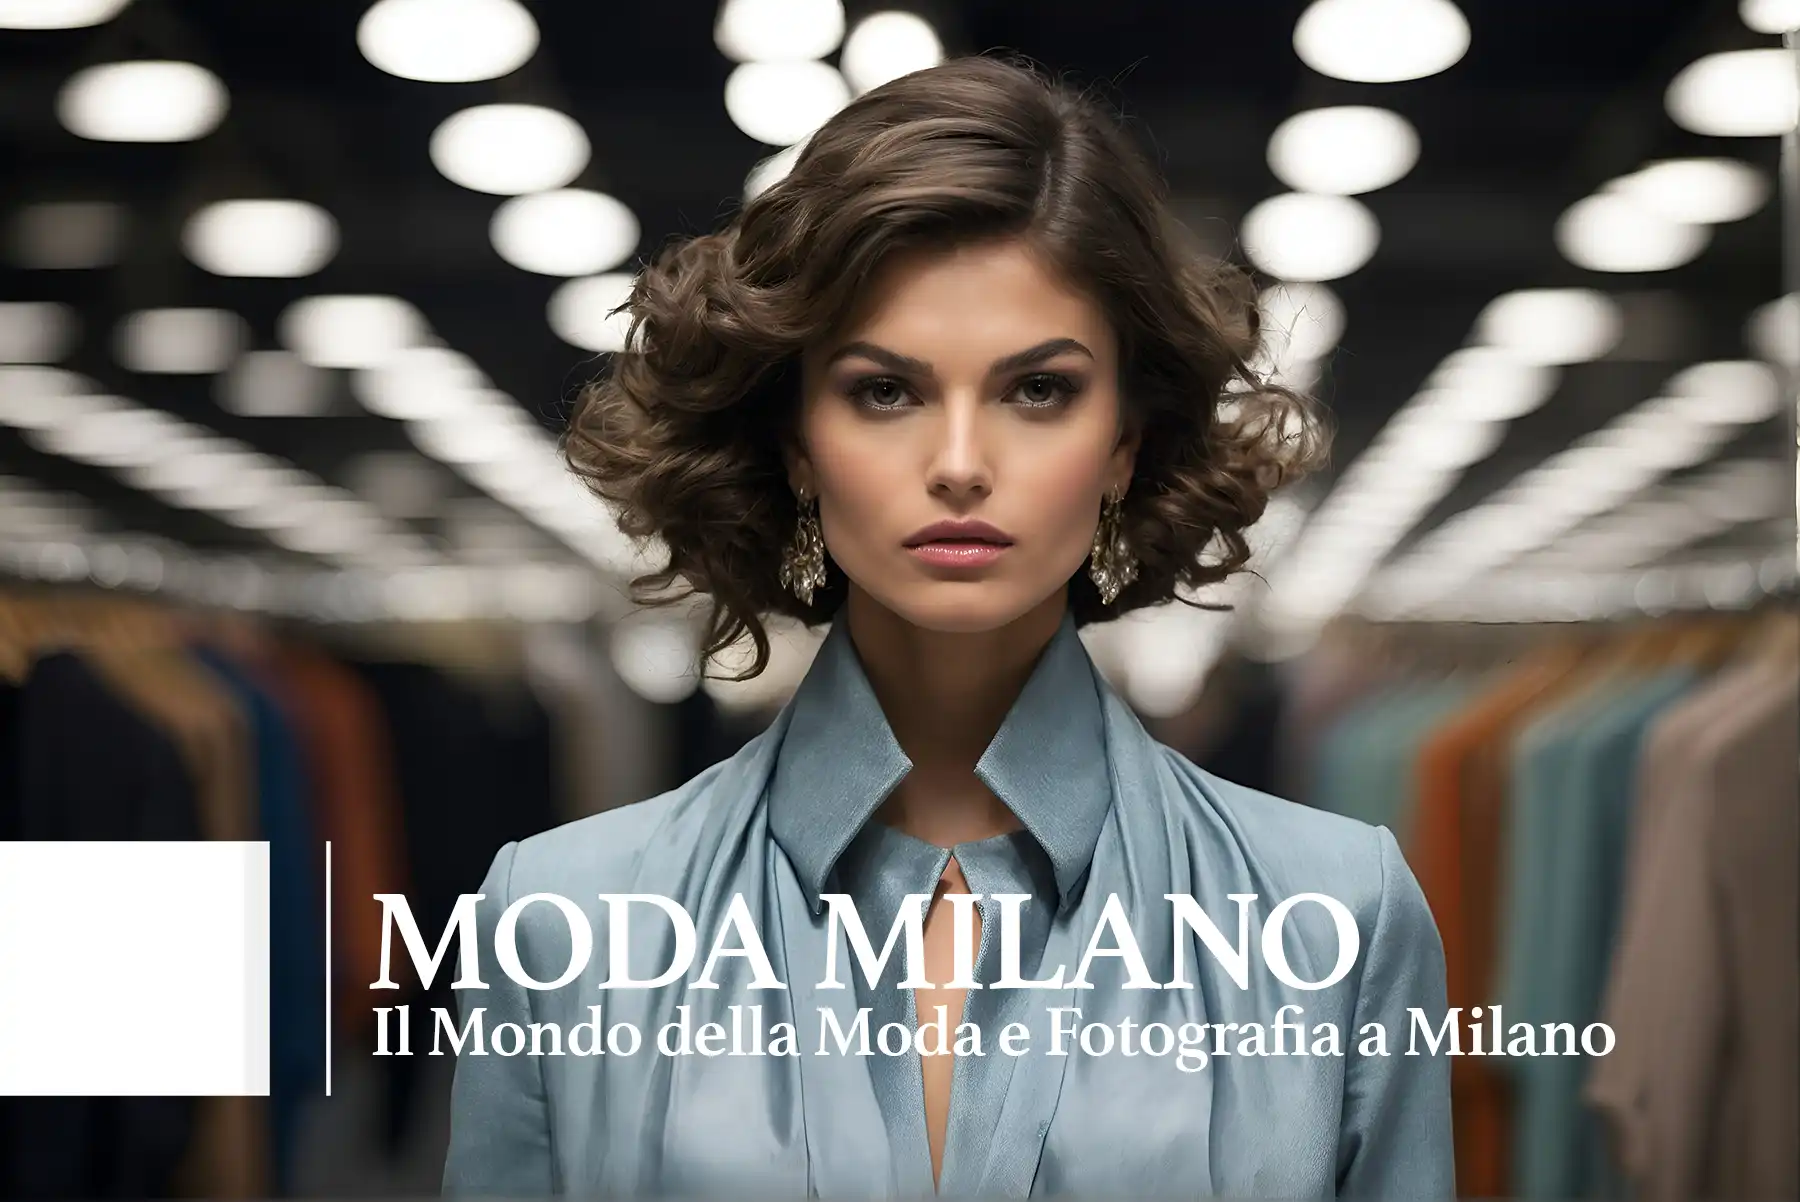 Il Mondo della Moda e Fotografia a Milano